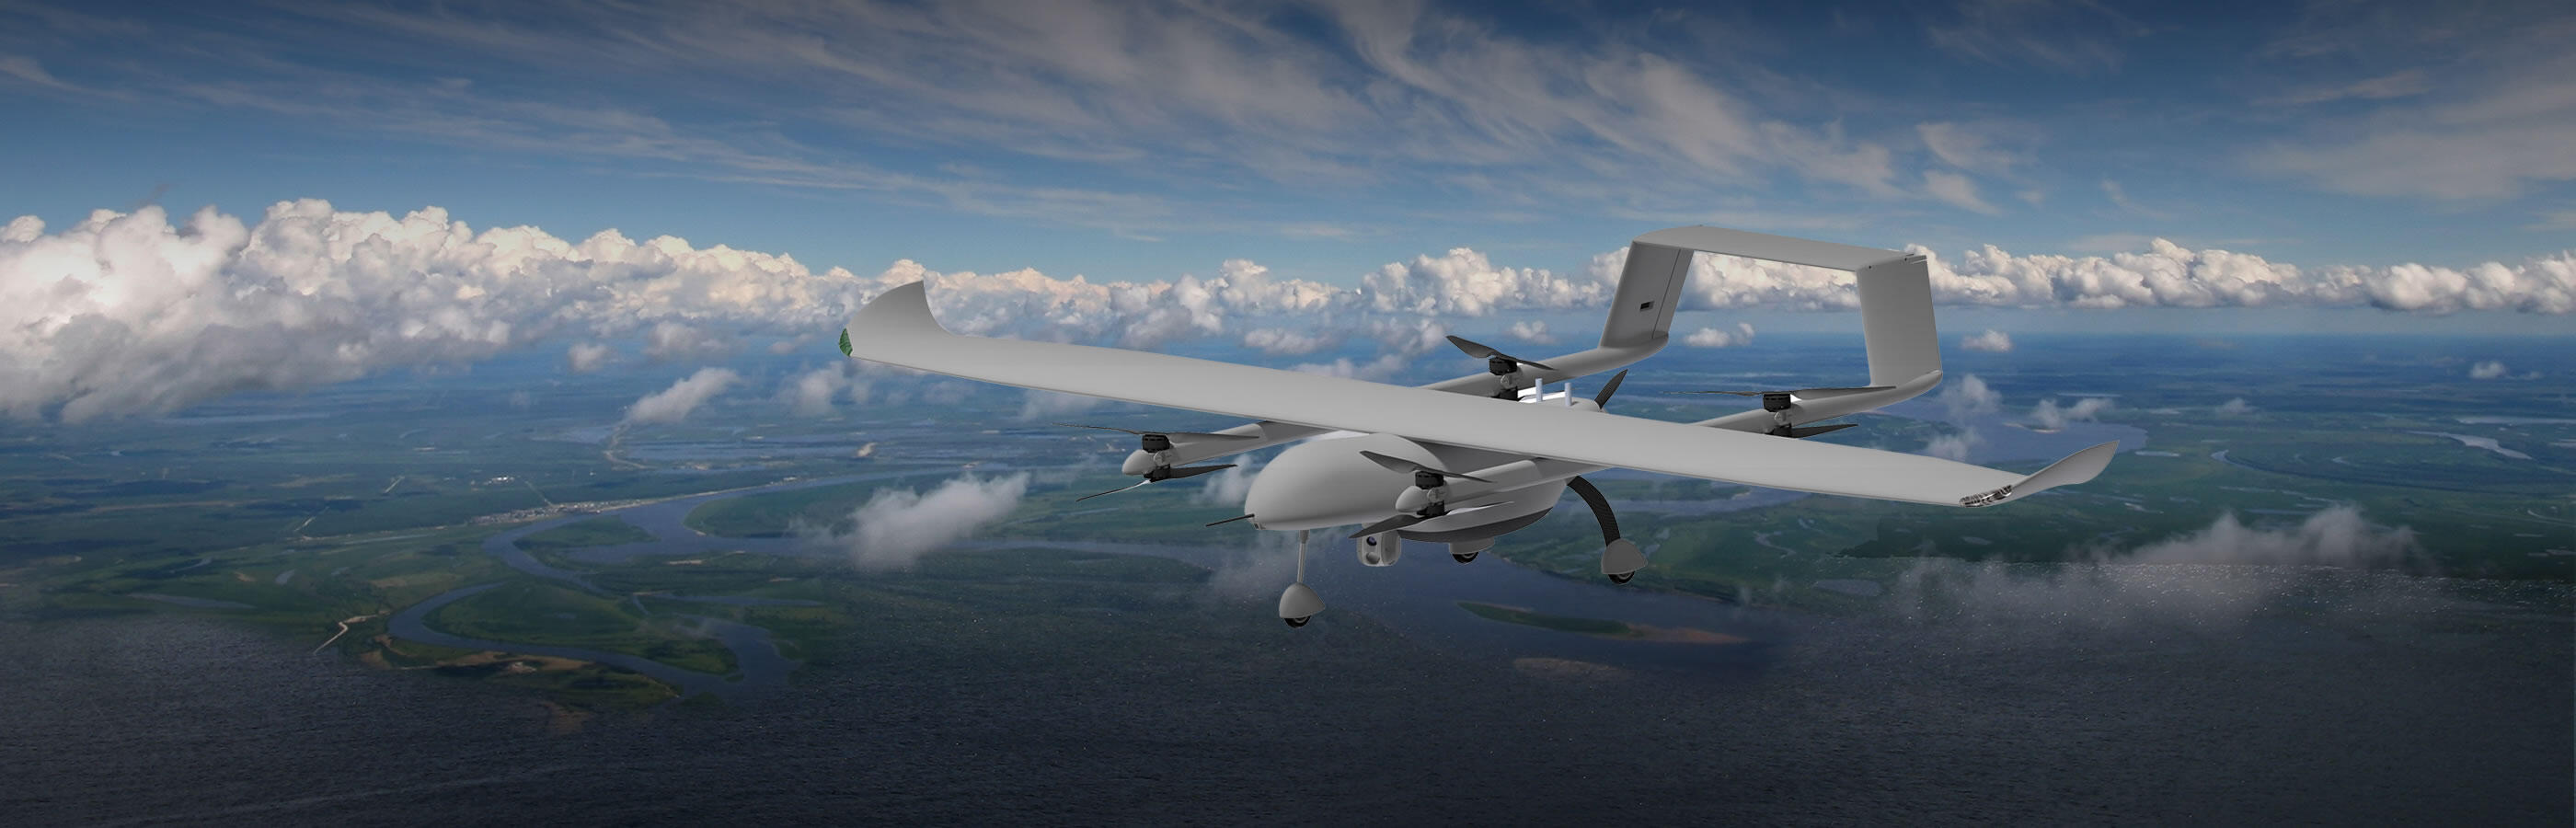 Capa-X - Systèmes de drones tactiques légers - Survey Copter